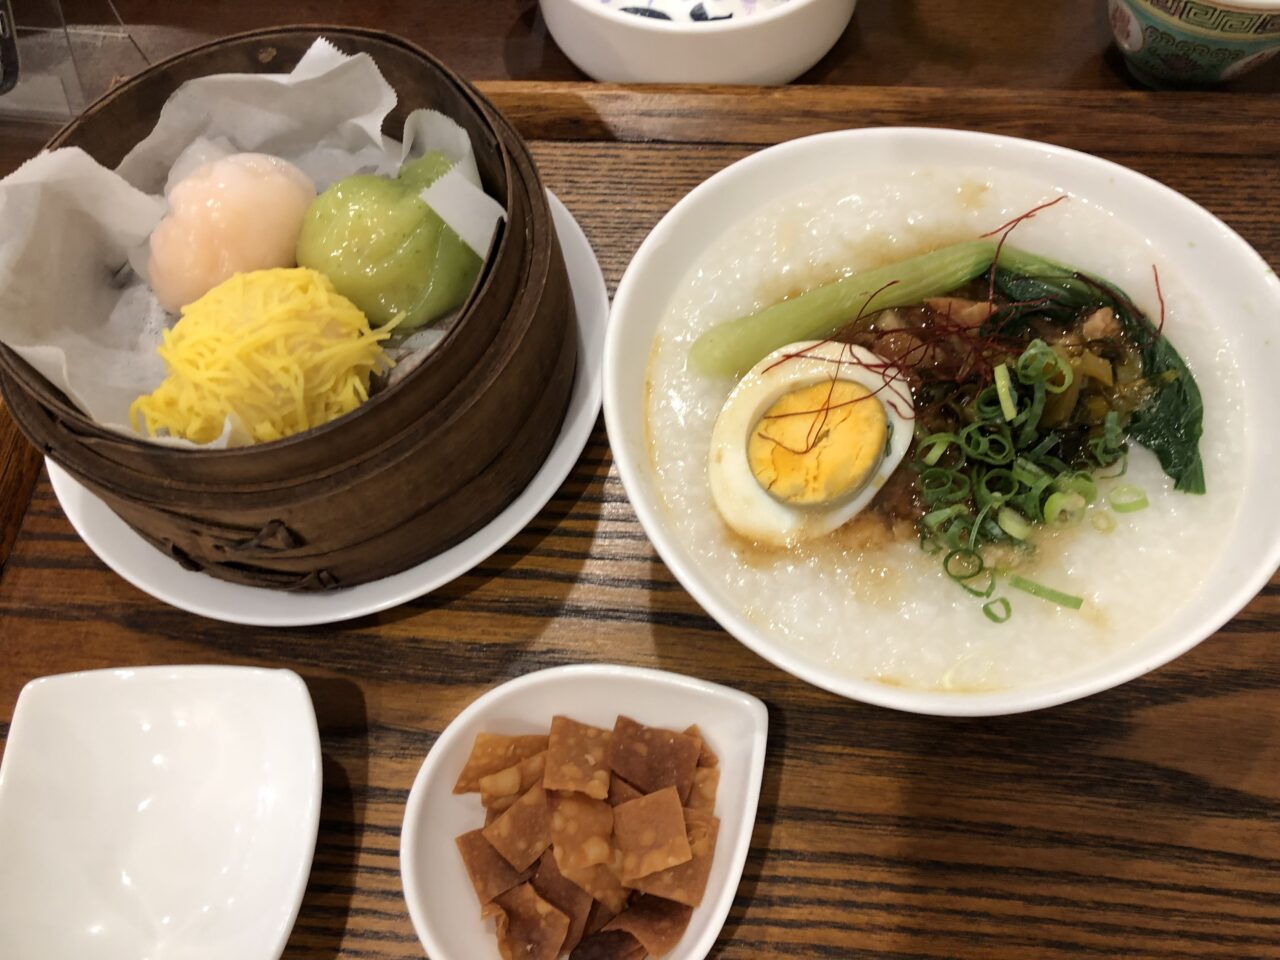 大阪府八尾市にある台湾カフェ「金萱堂」の台湾粥セット